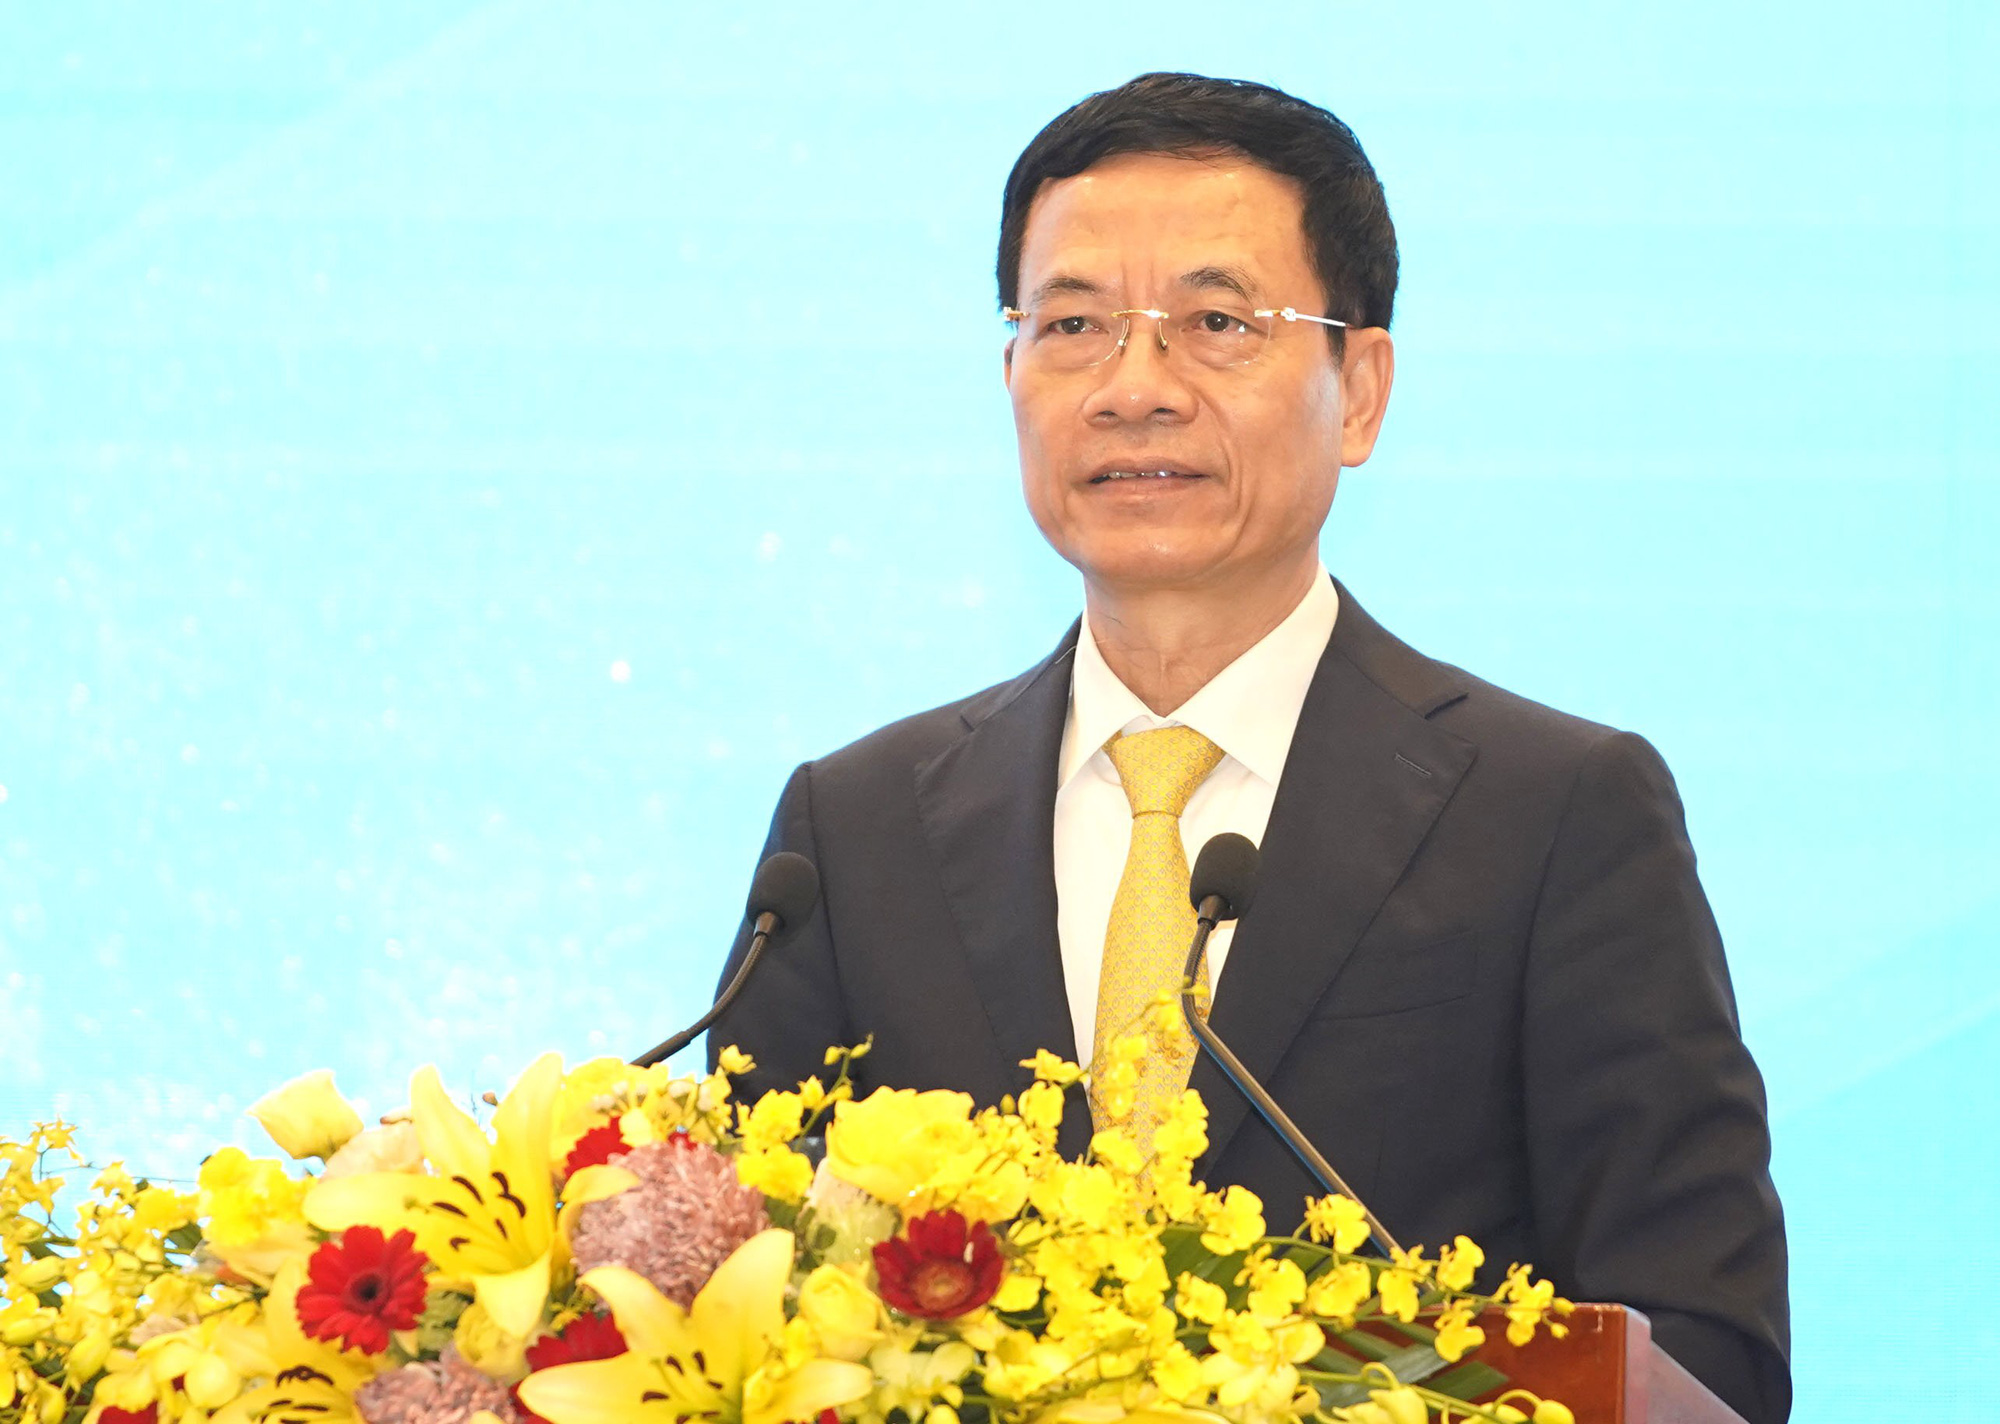 Phát biểu của Bộ trưởng Nguyễn Mạnh Hùng tại Hội nghị Tổng kết ngành Công thương năm 2021 - Ảnh 1.